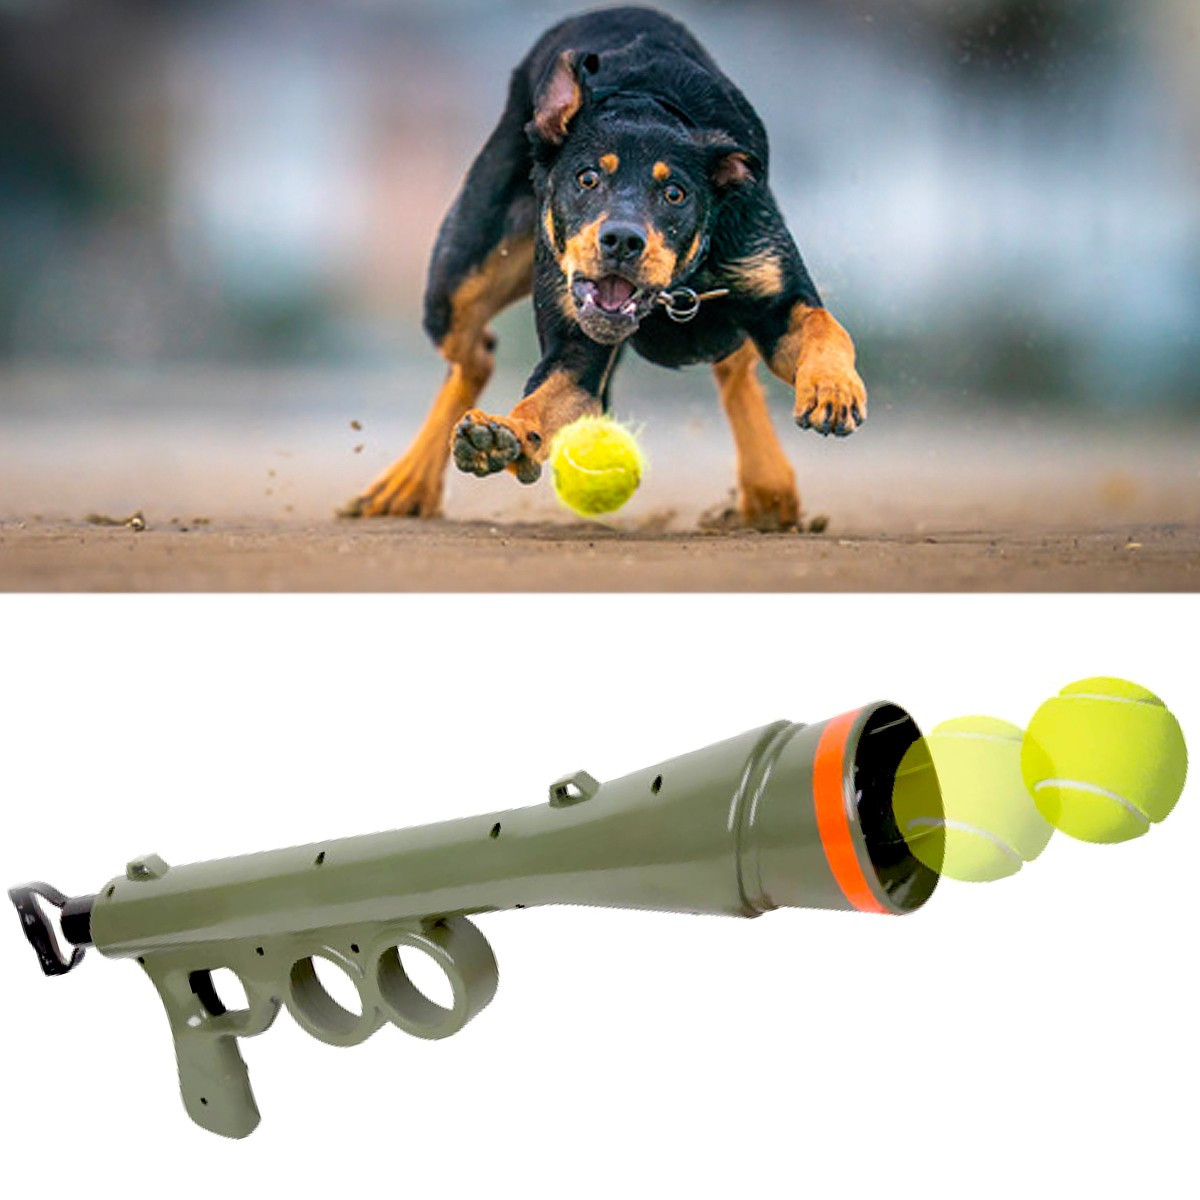 Balle de tennis pour chien